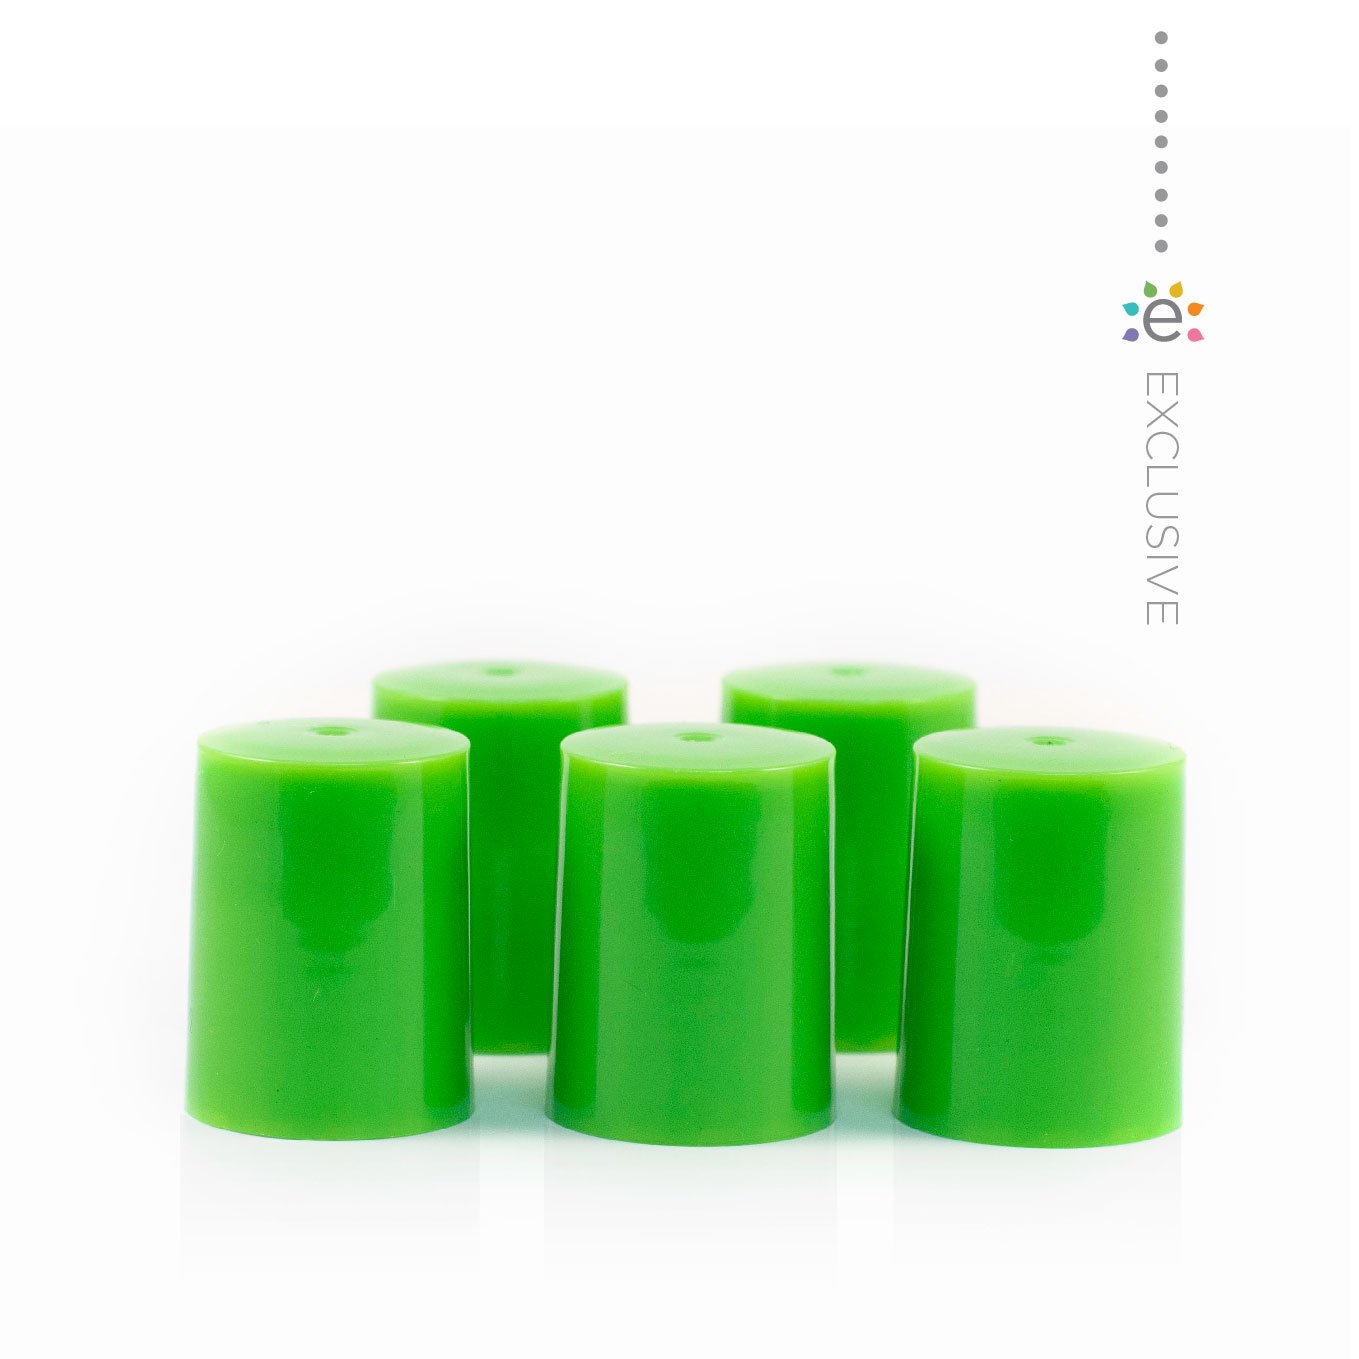 Műanyag kupakok (5 darab) Roll-on üveghengerhez , Páfrány/ zöld színben